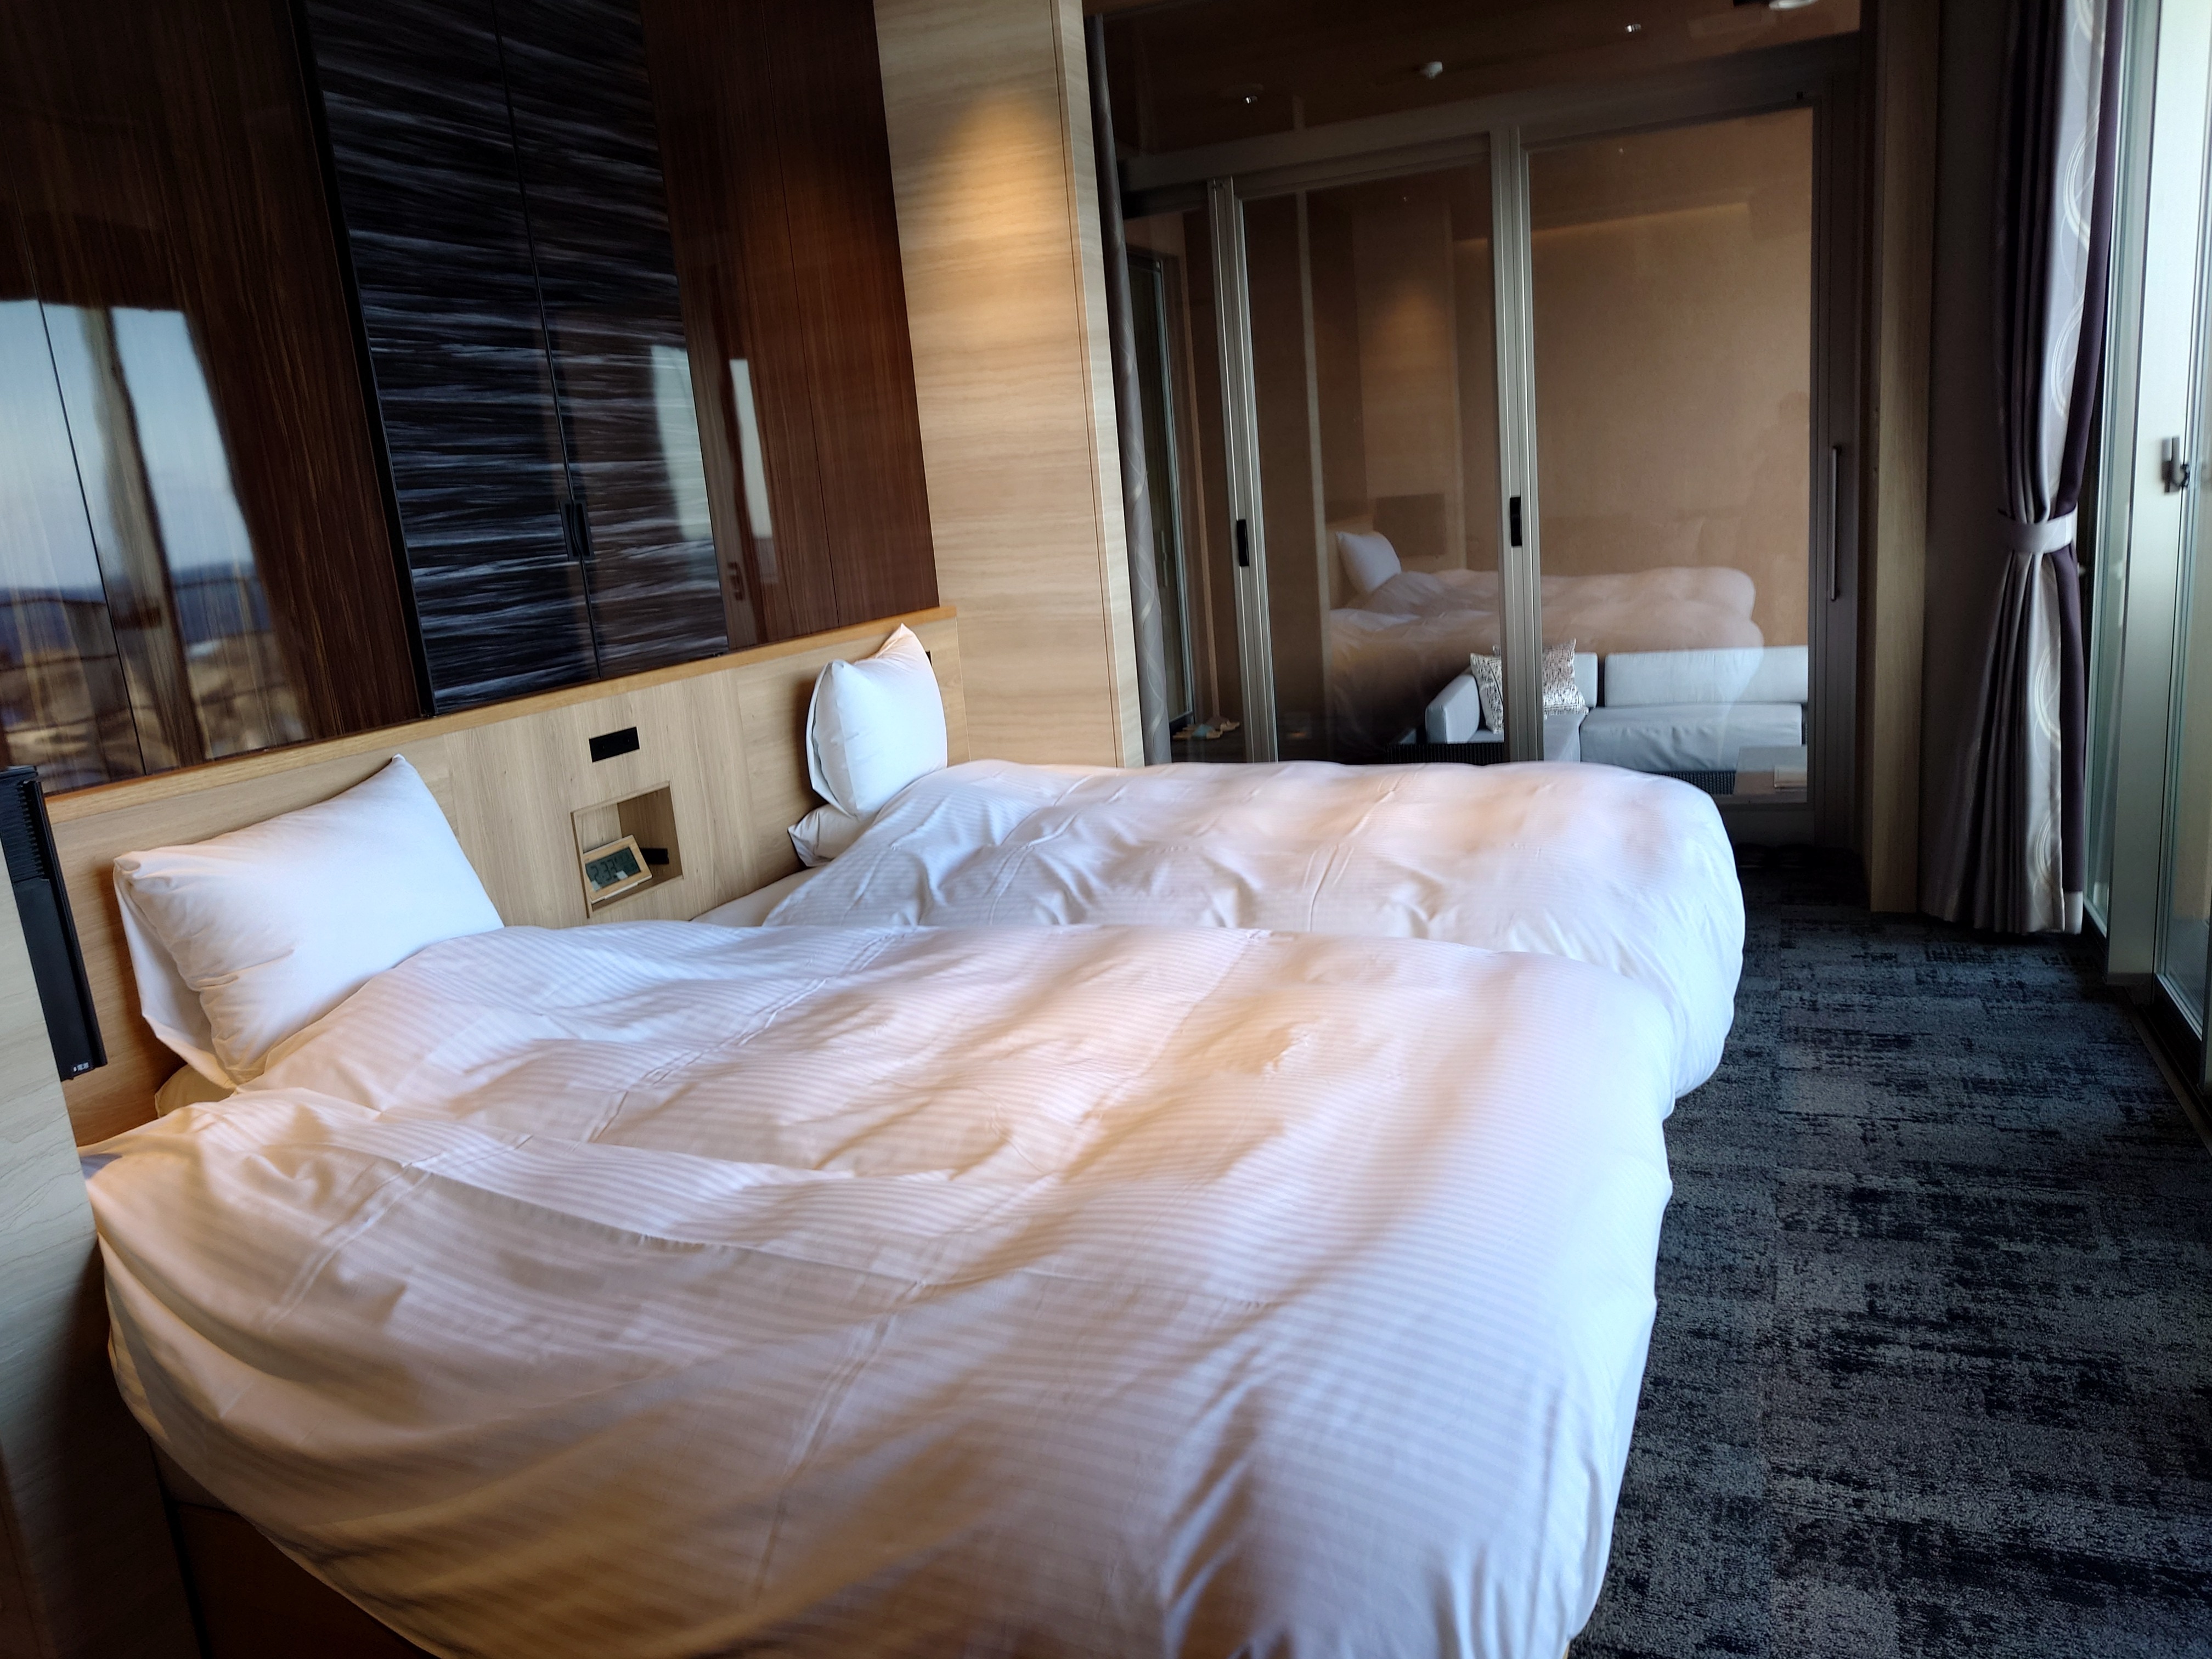 Tempat tidur tipe mewah dan premium adalah tempat tidur twin double yang luas!